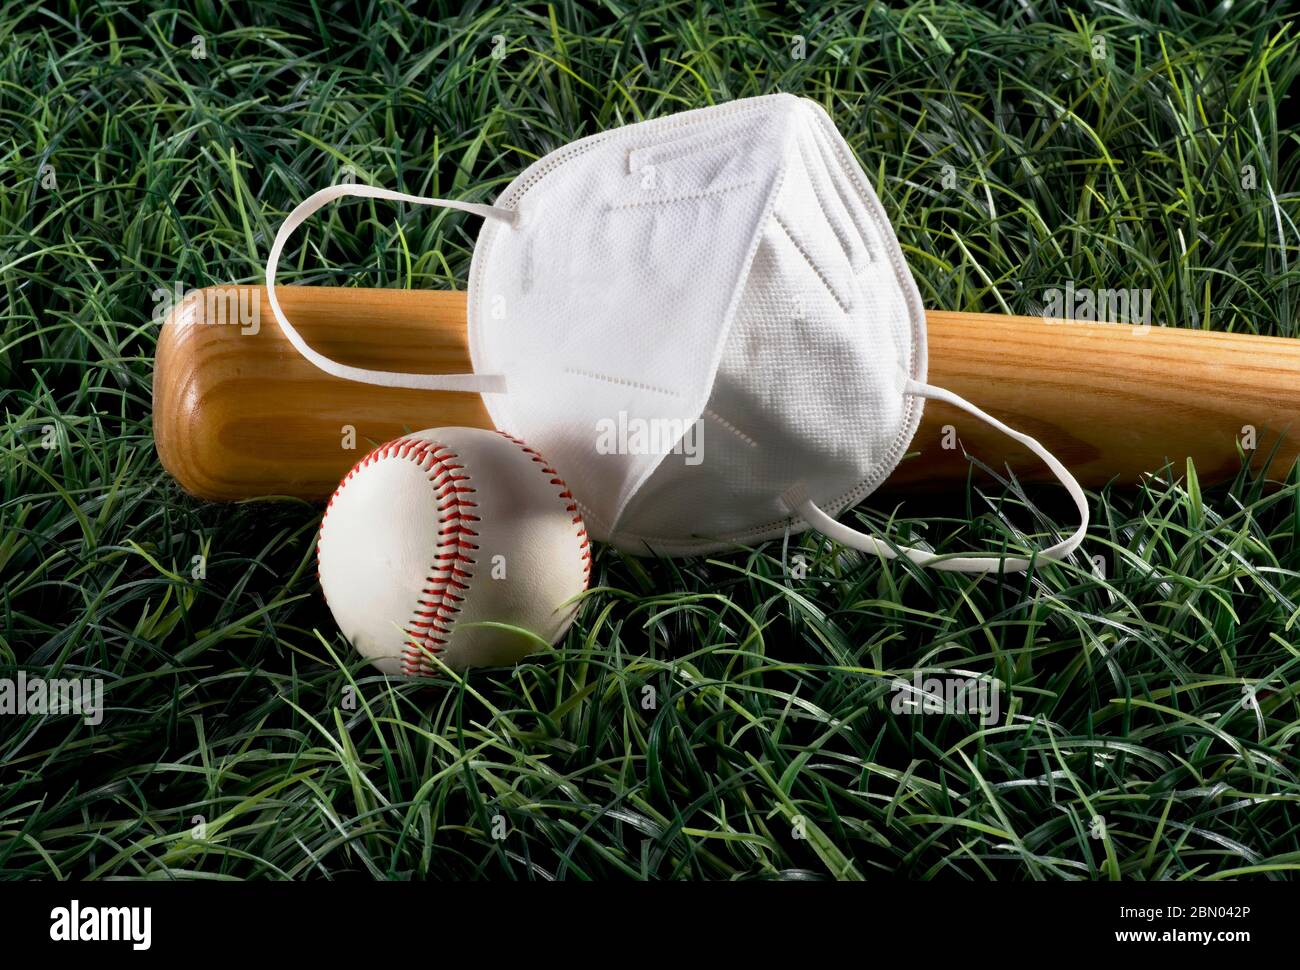 Saison de baseball avec masque N95, balle et chauve-souris. Banque D'Images